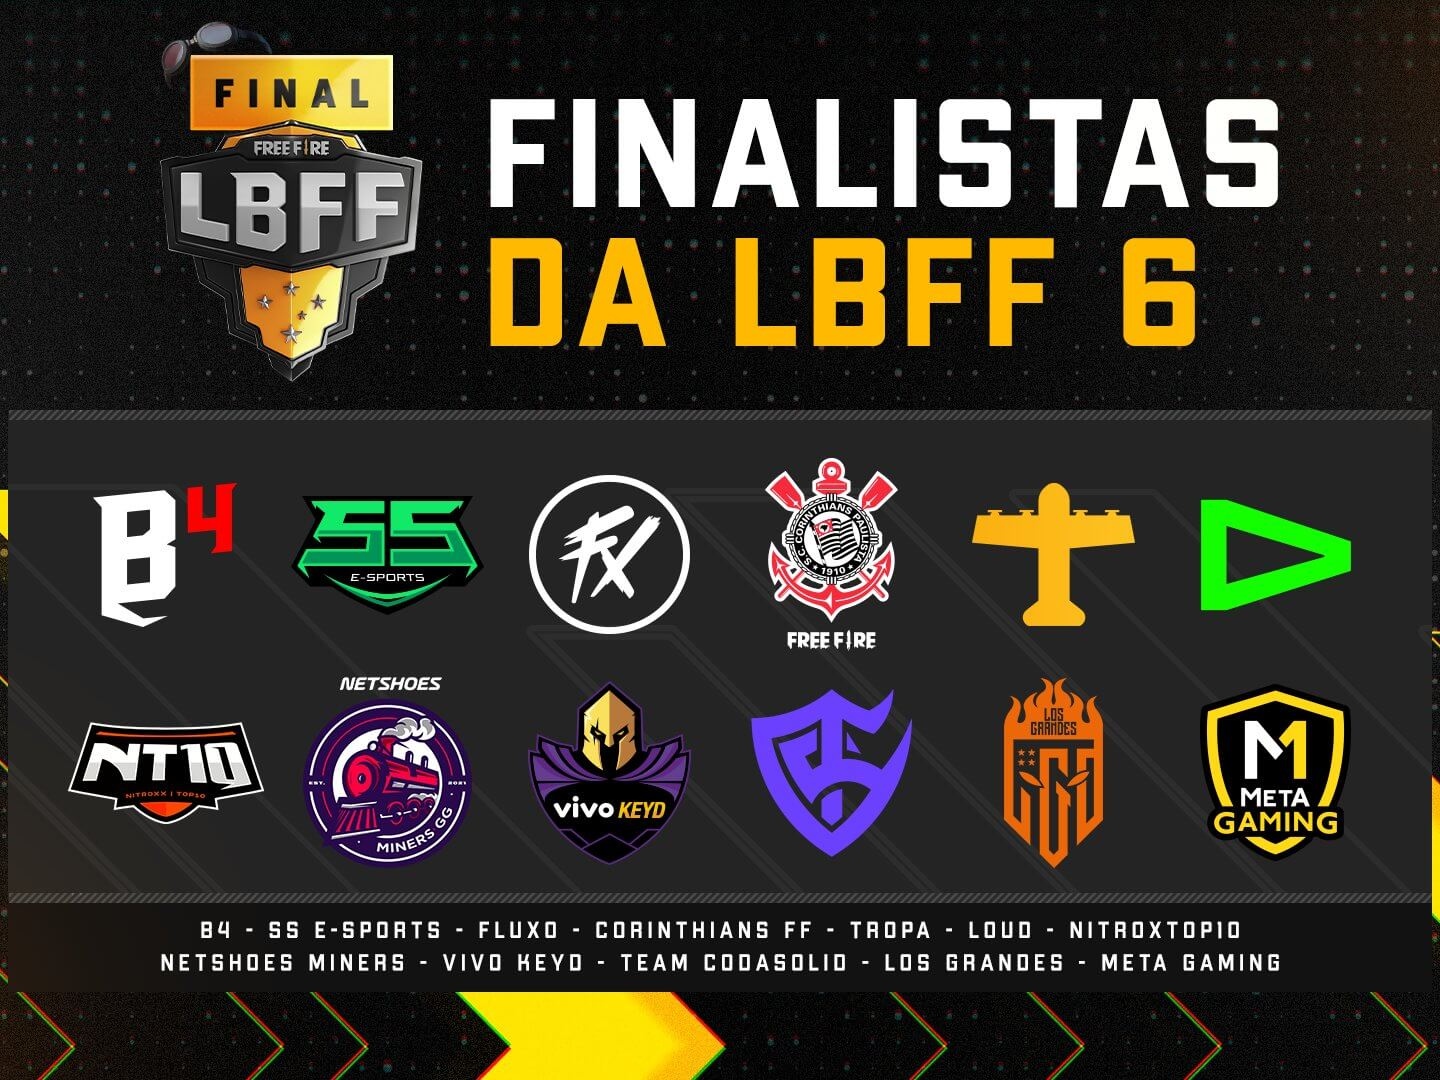 Veja quem foram os 12 Finalistas da FF Pro League 3° edição